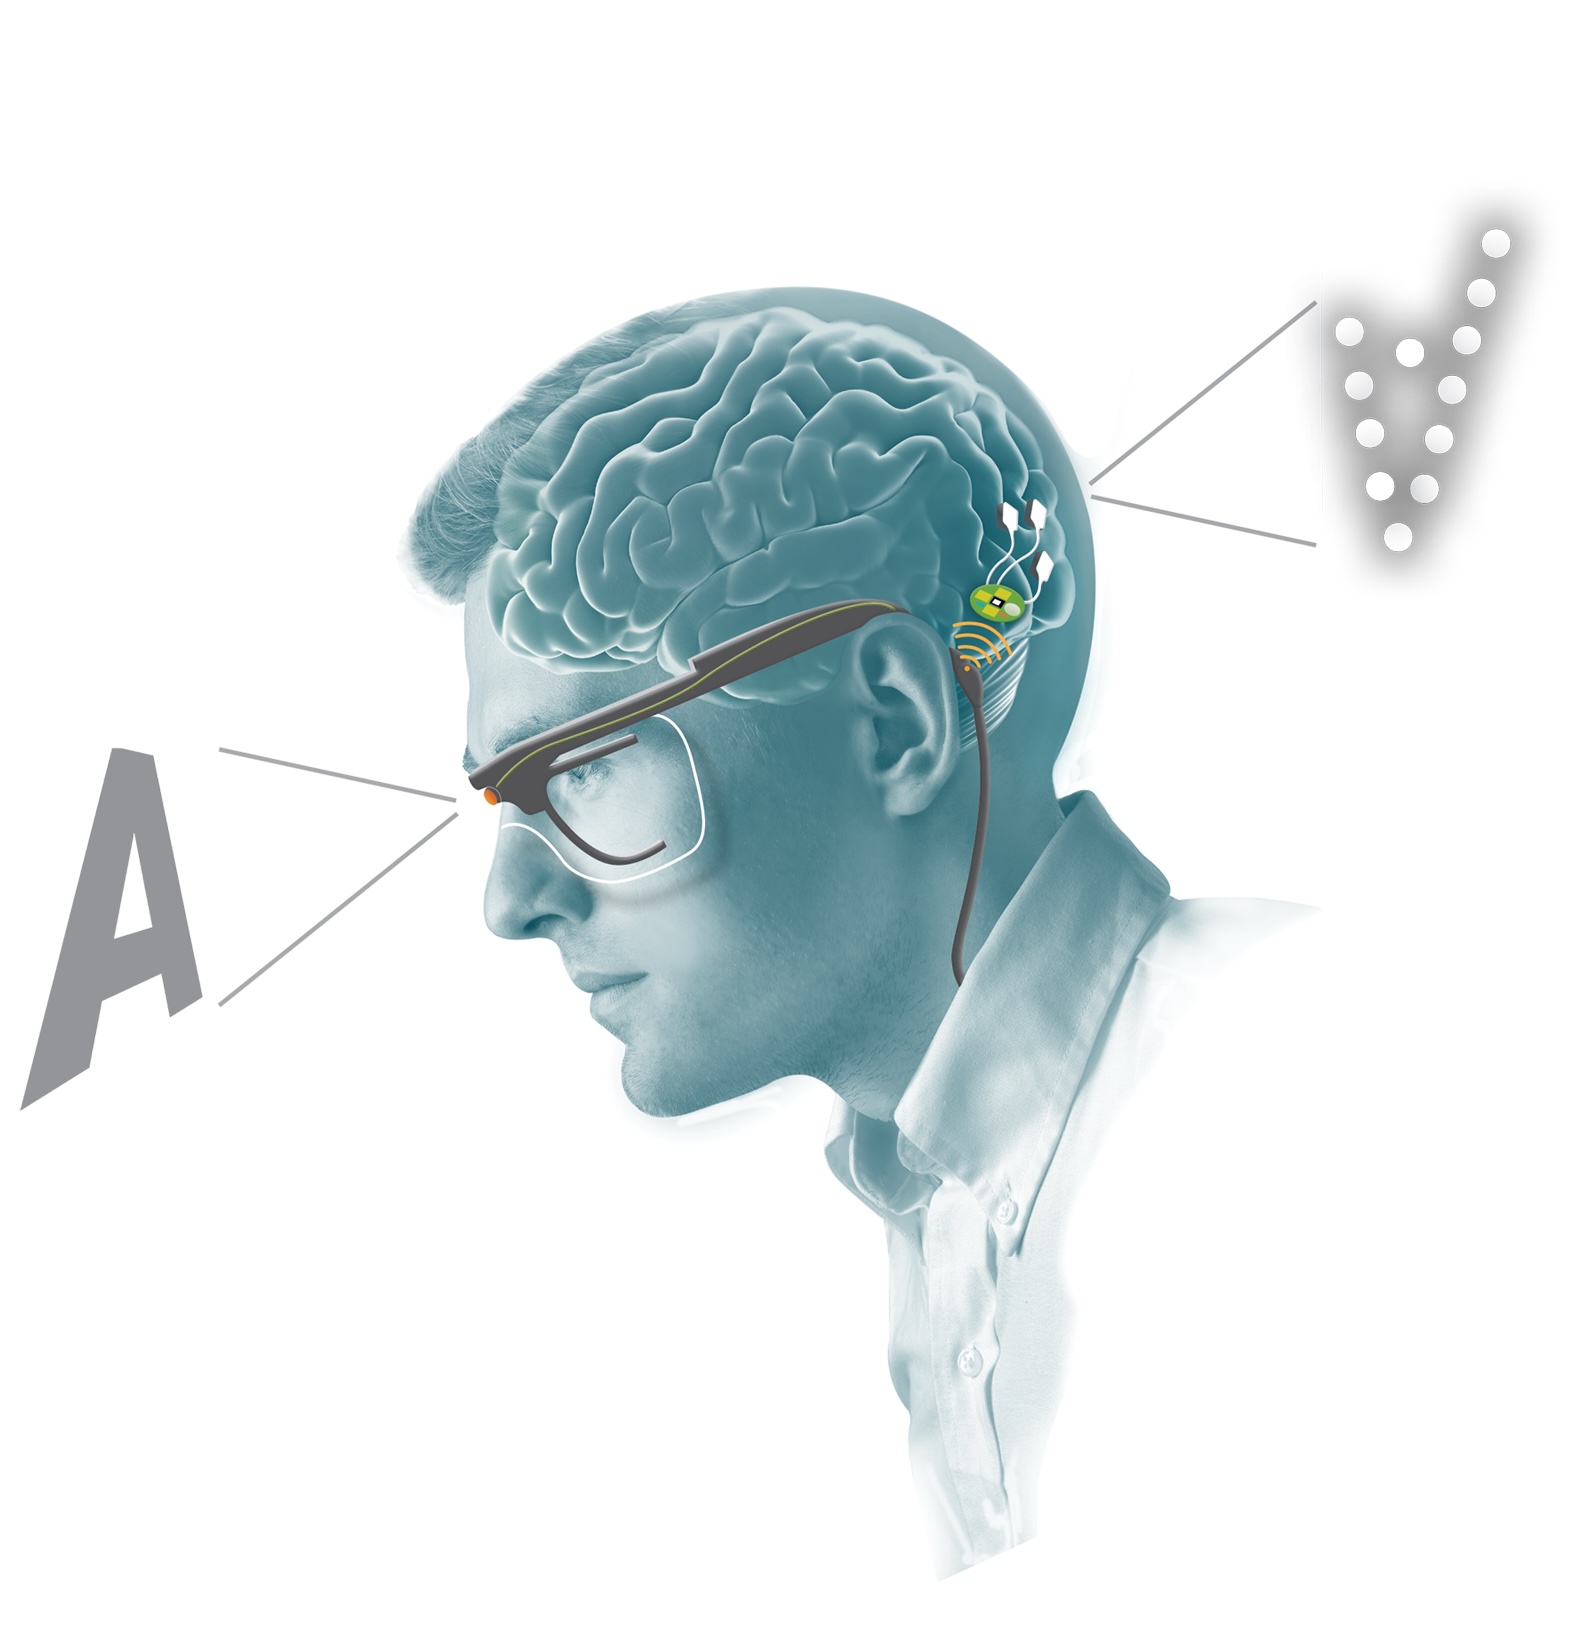 Ilustración de una cabeza de un hombre de perfil con las gafas de retina artificial puestas, conectadas a unos microimplantes cerebrales. En la parte delantera de la imagen sale la letra A y en la parte de atrás de la imagen del hombre sale la detección de esa misma letra A volteada y con puntos, a modo de interpretación cerebral